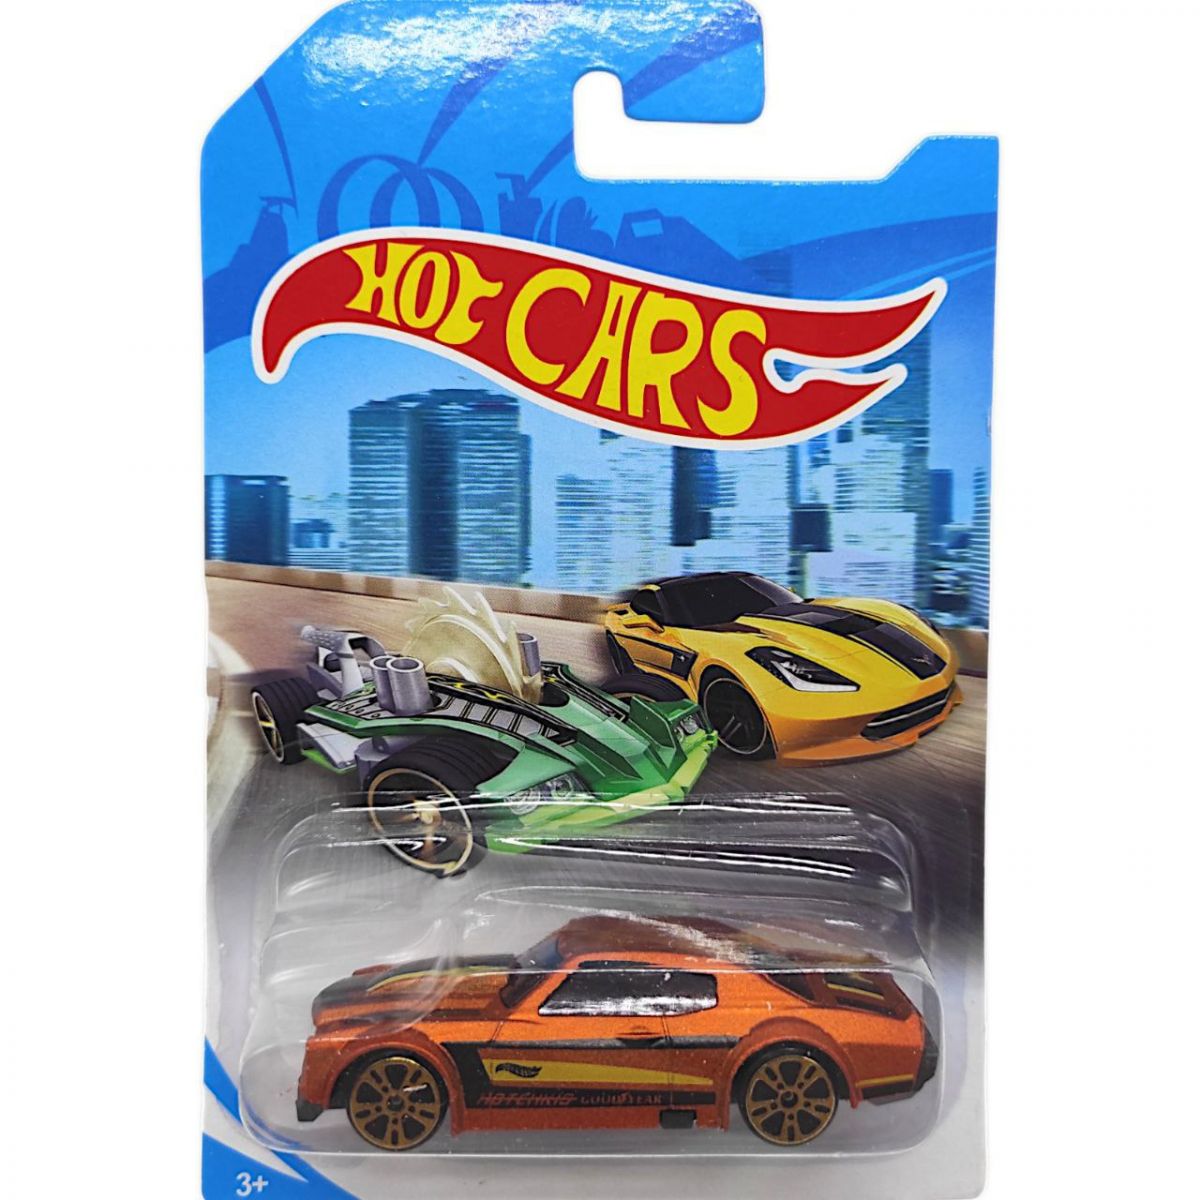 Машинка пластикова "Hot CARS" (сіра), вид 1